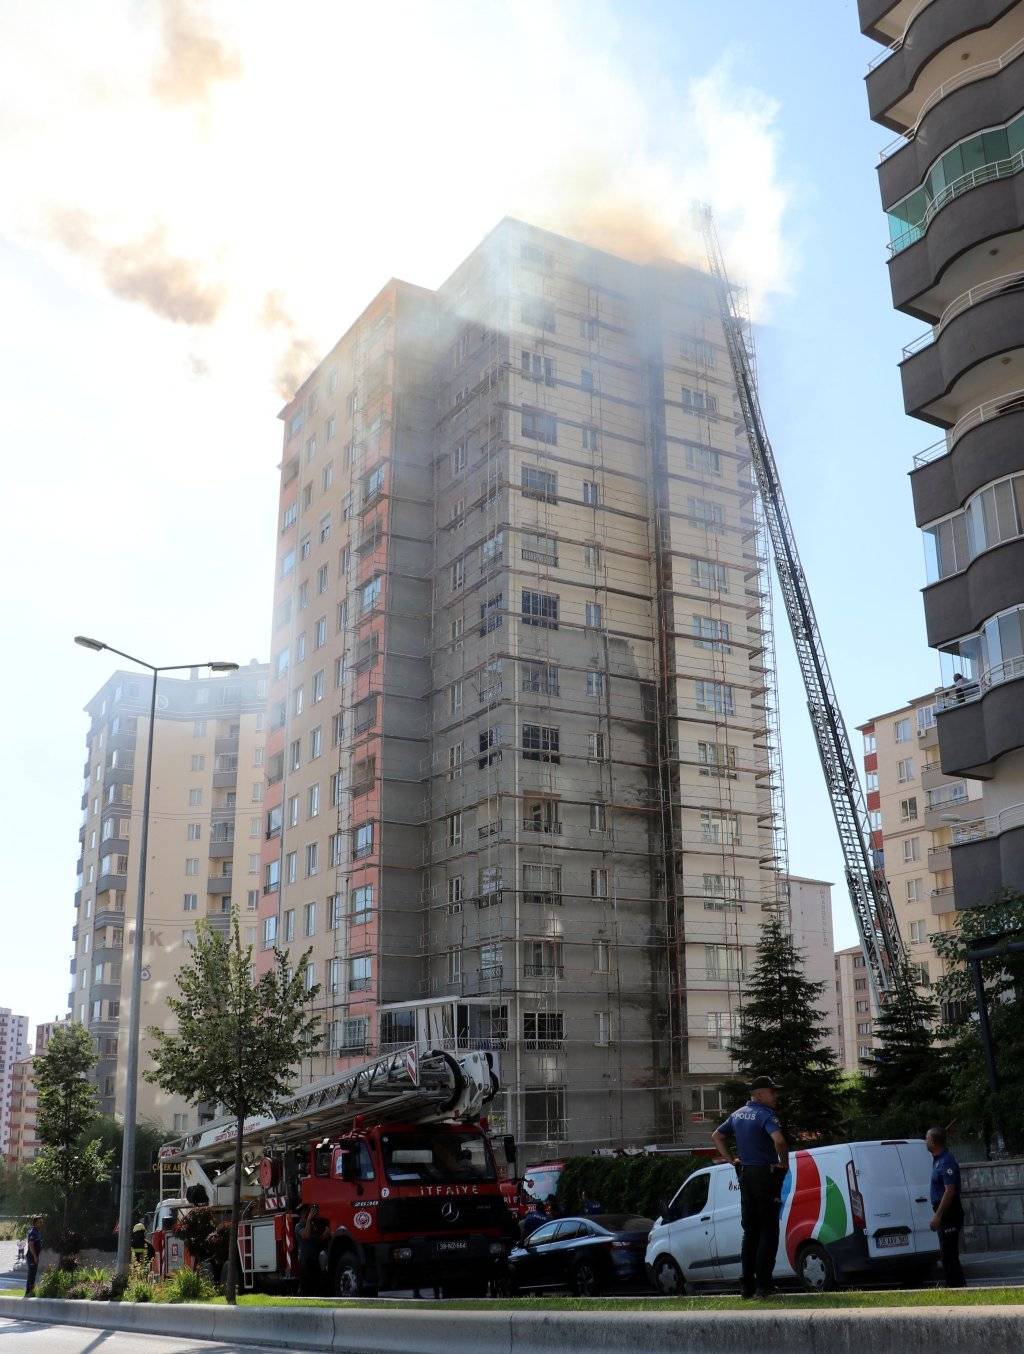 Kayseri'de 13 katlı binanın çatısında yangın çıktı: 1 kişi yaşamını yitirdi, 3 kişi yaralı 3